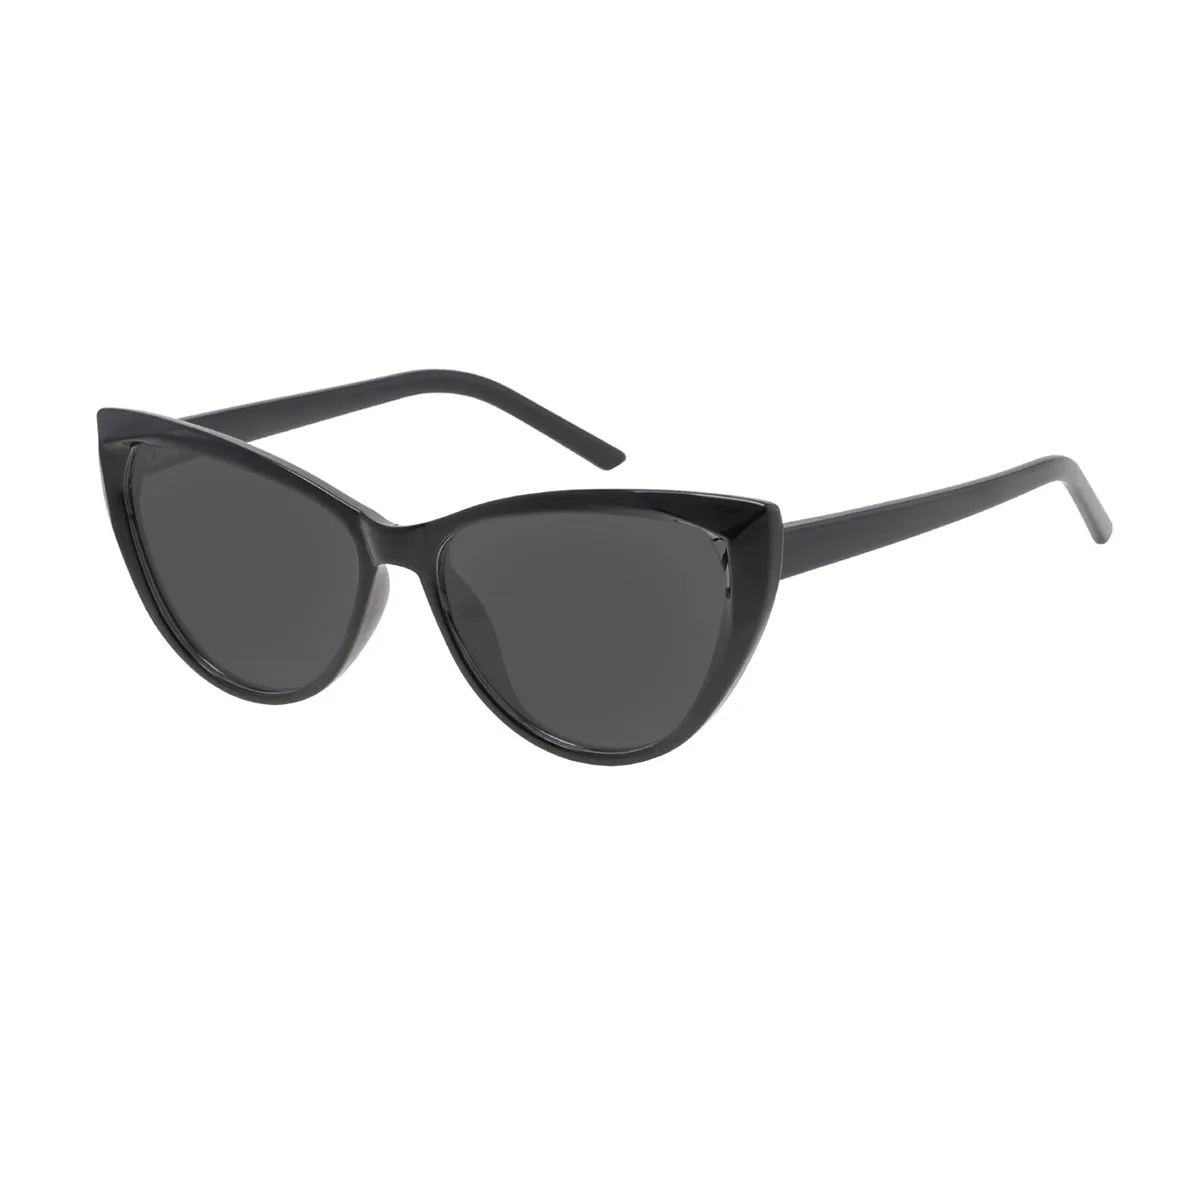 Celia - Cat-eye Black Sunglasses for Women